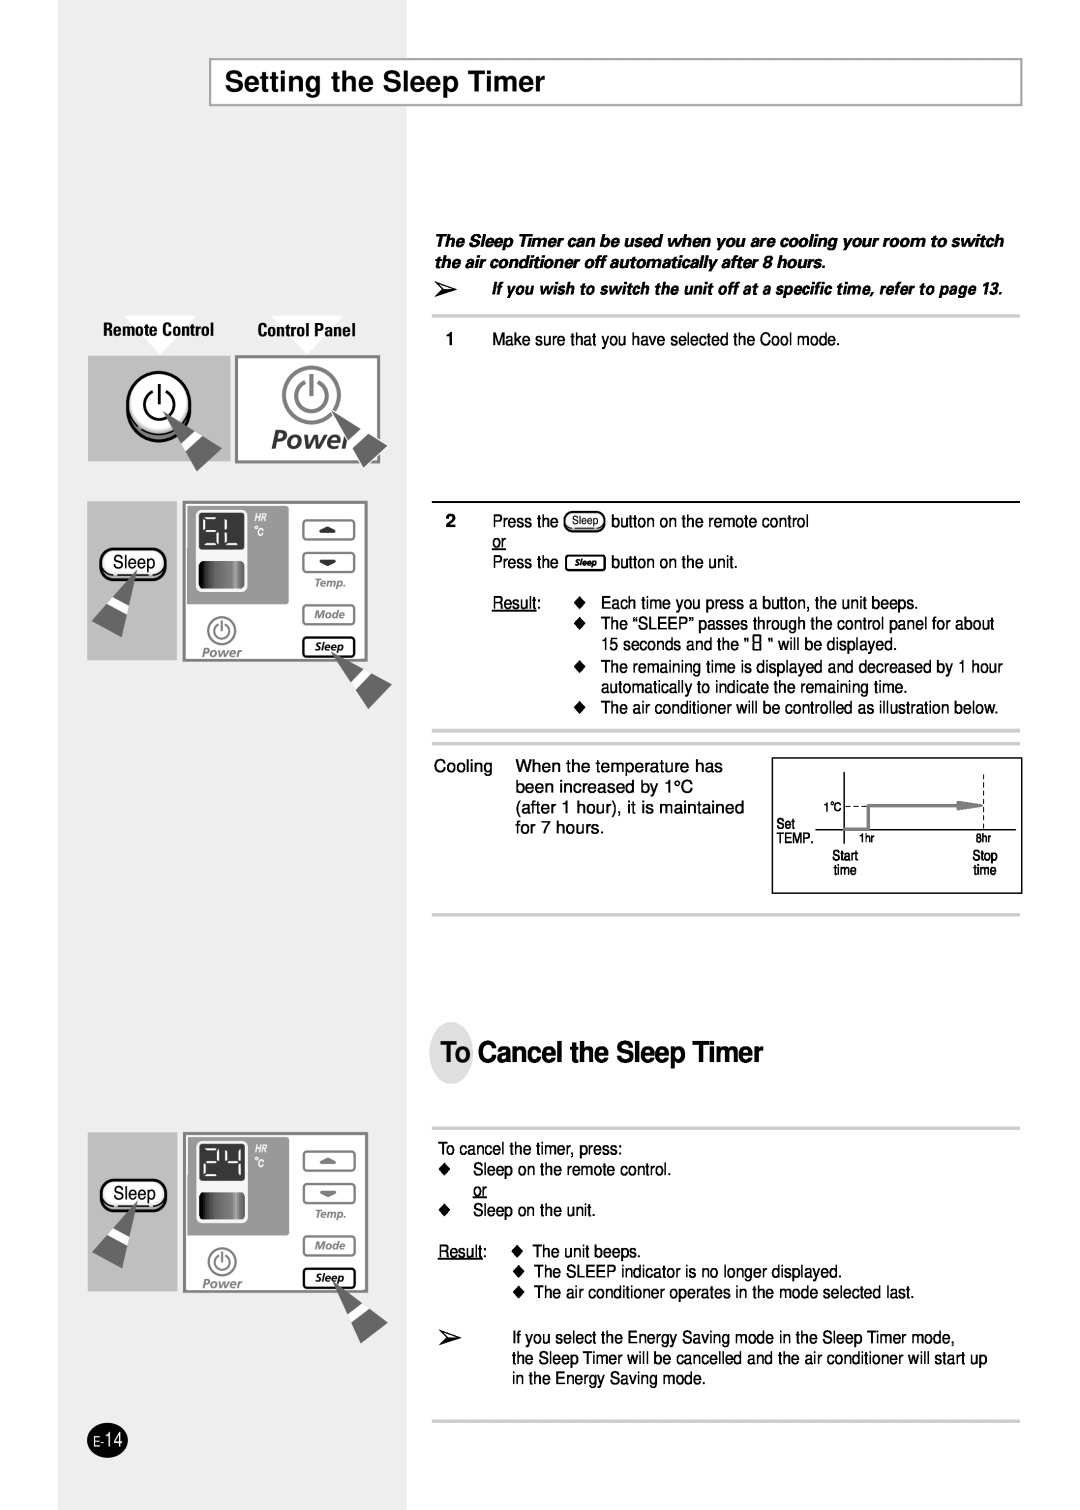 Samsung AW0601B manual Setting the Sleep Timer, To Cancel the Sleep Timer, Remote Control, Control Panel 